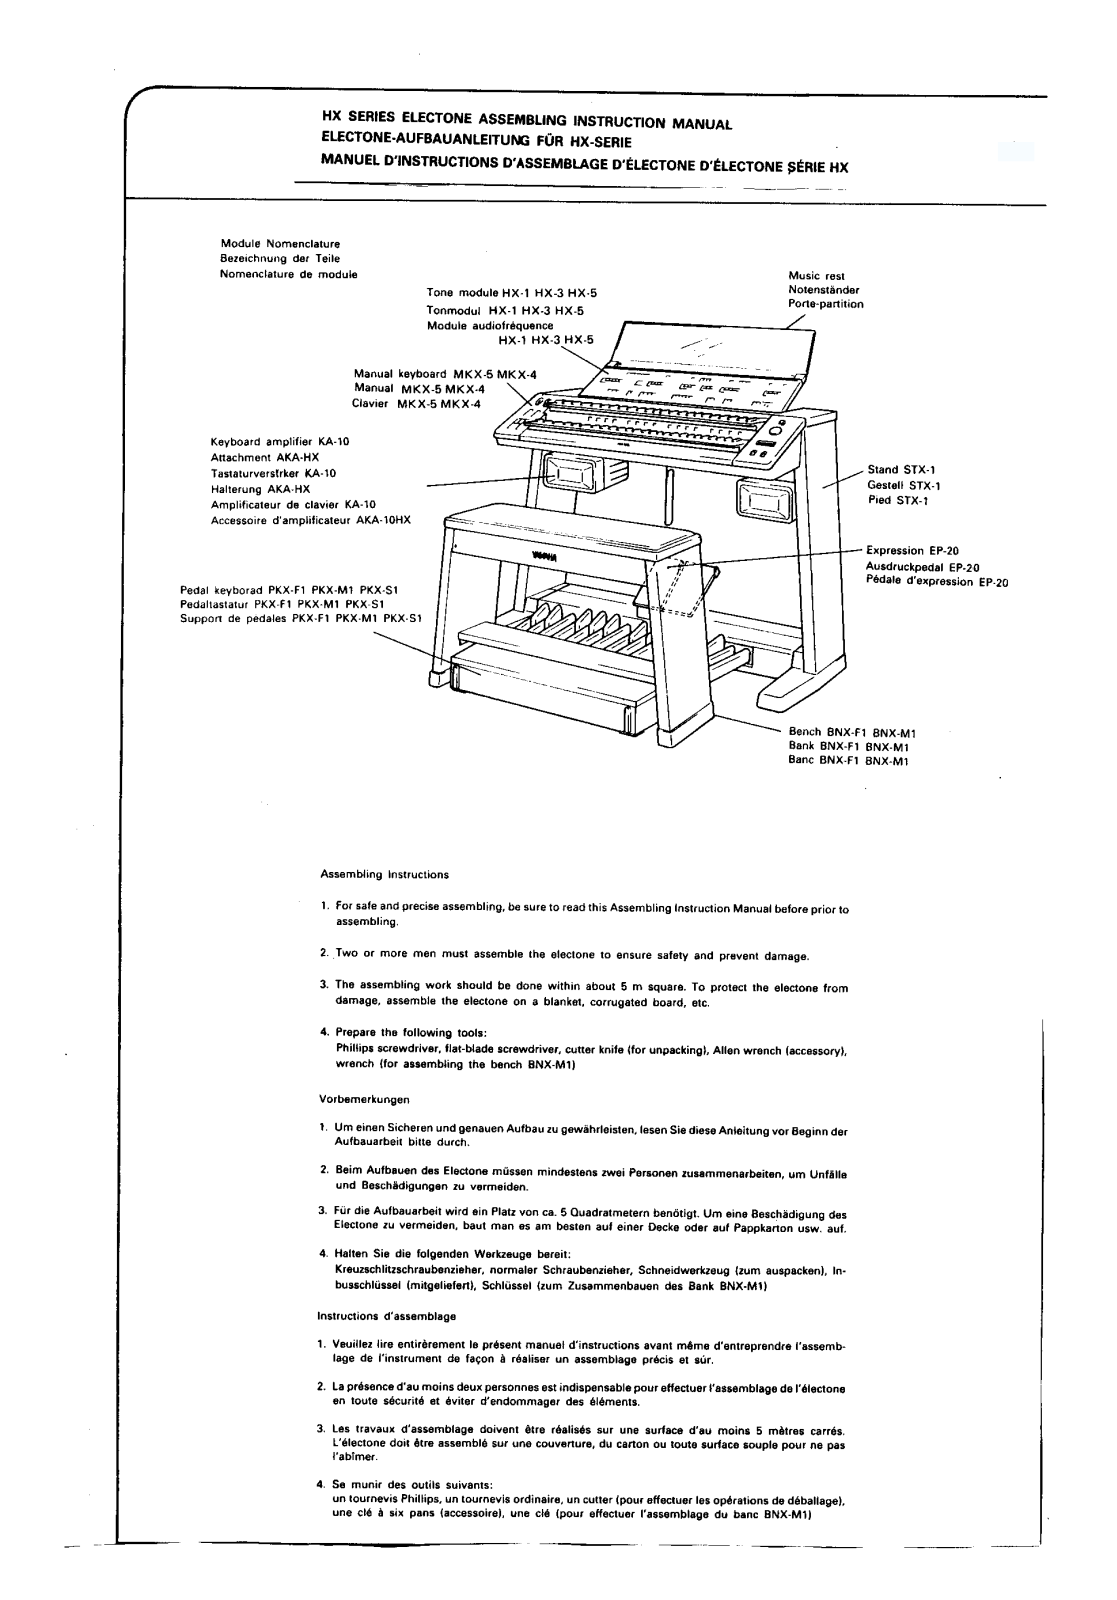 Yamaha HX-1, HX-5, HX-3 Instruction Manual